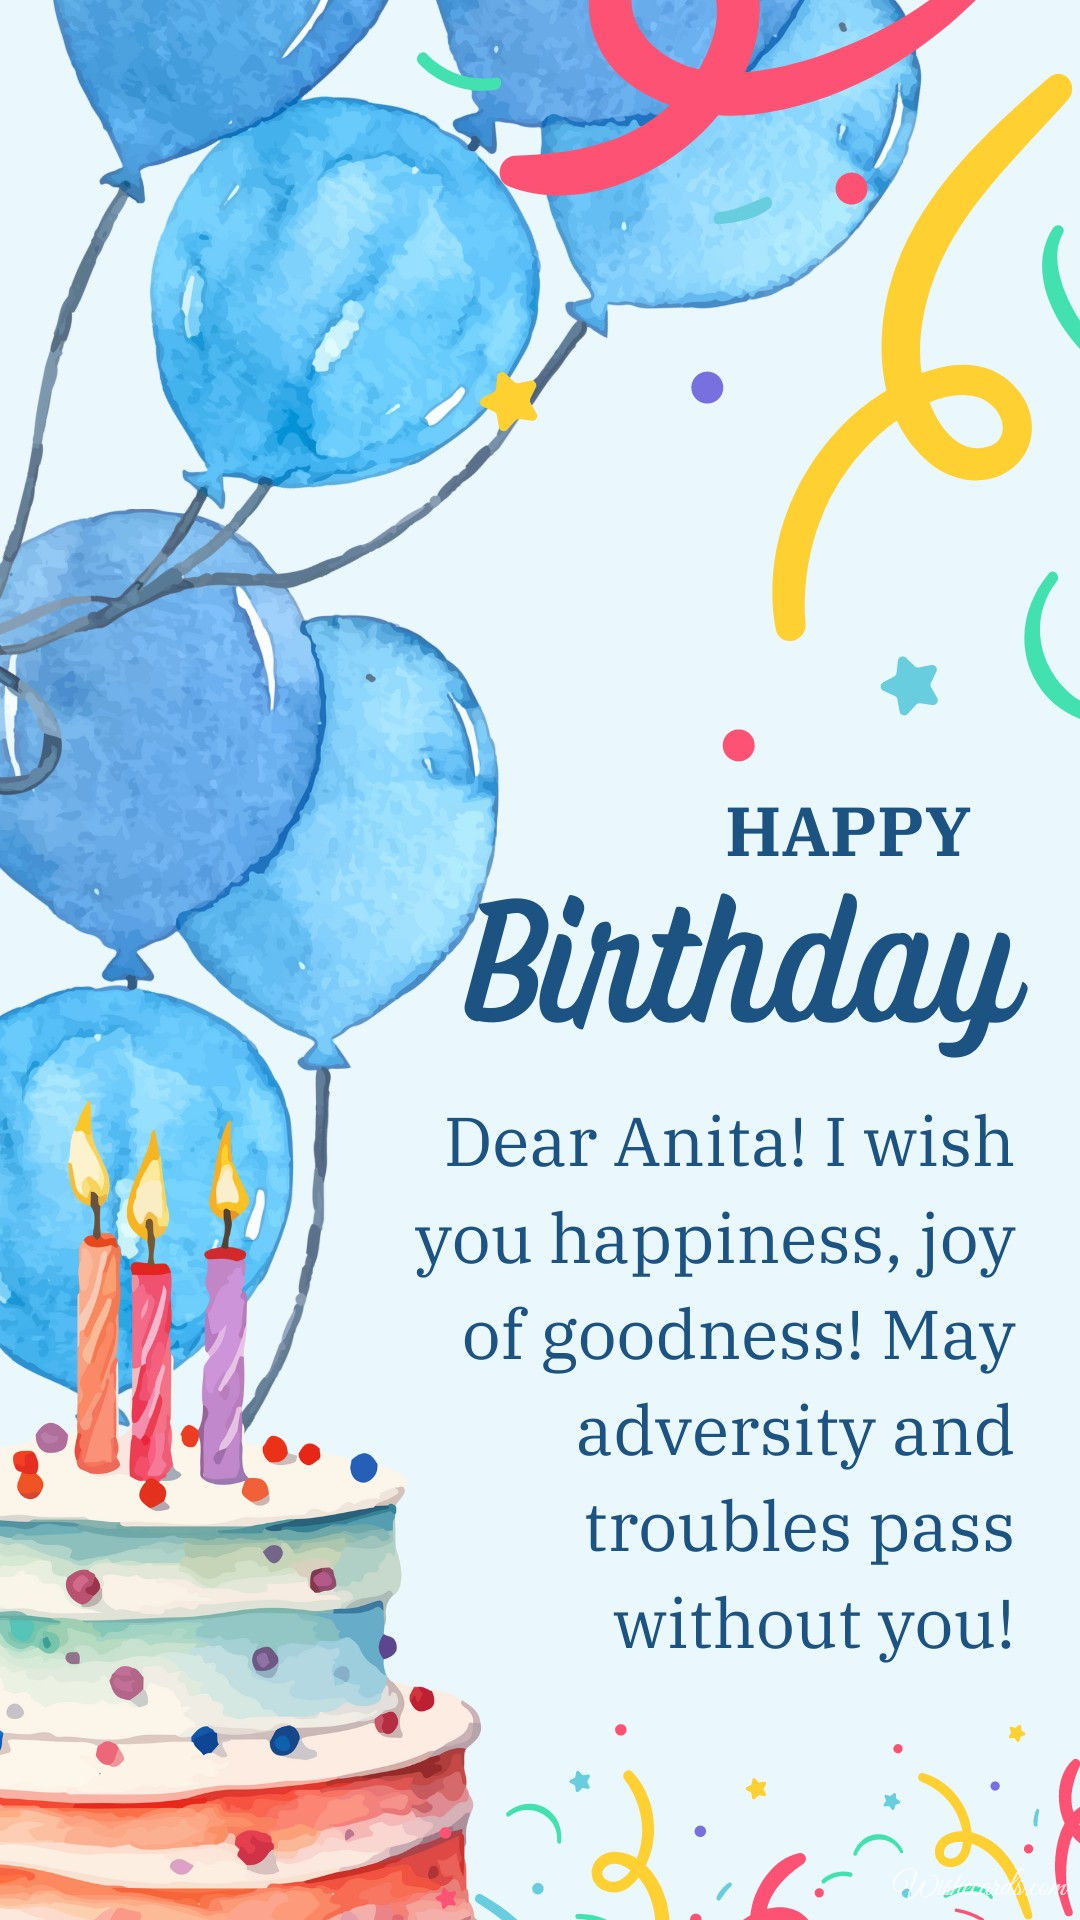 Happy Birthday to Anita